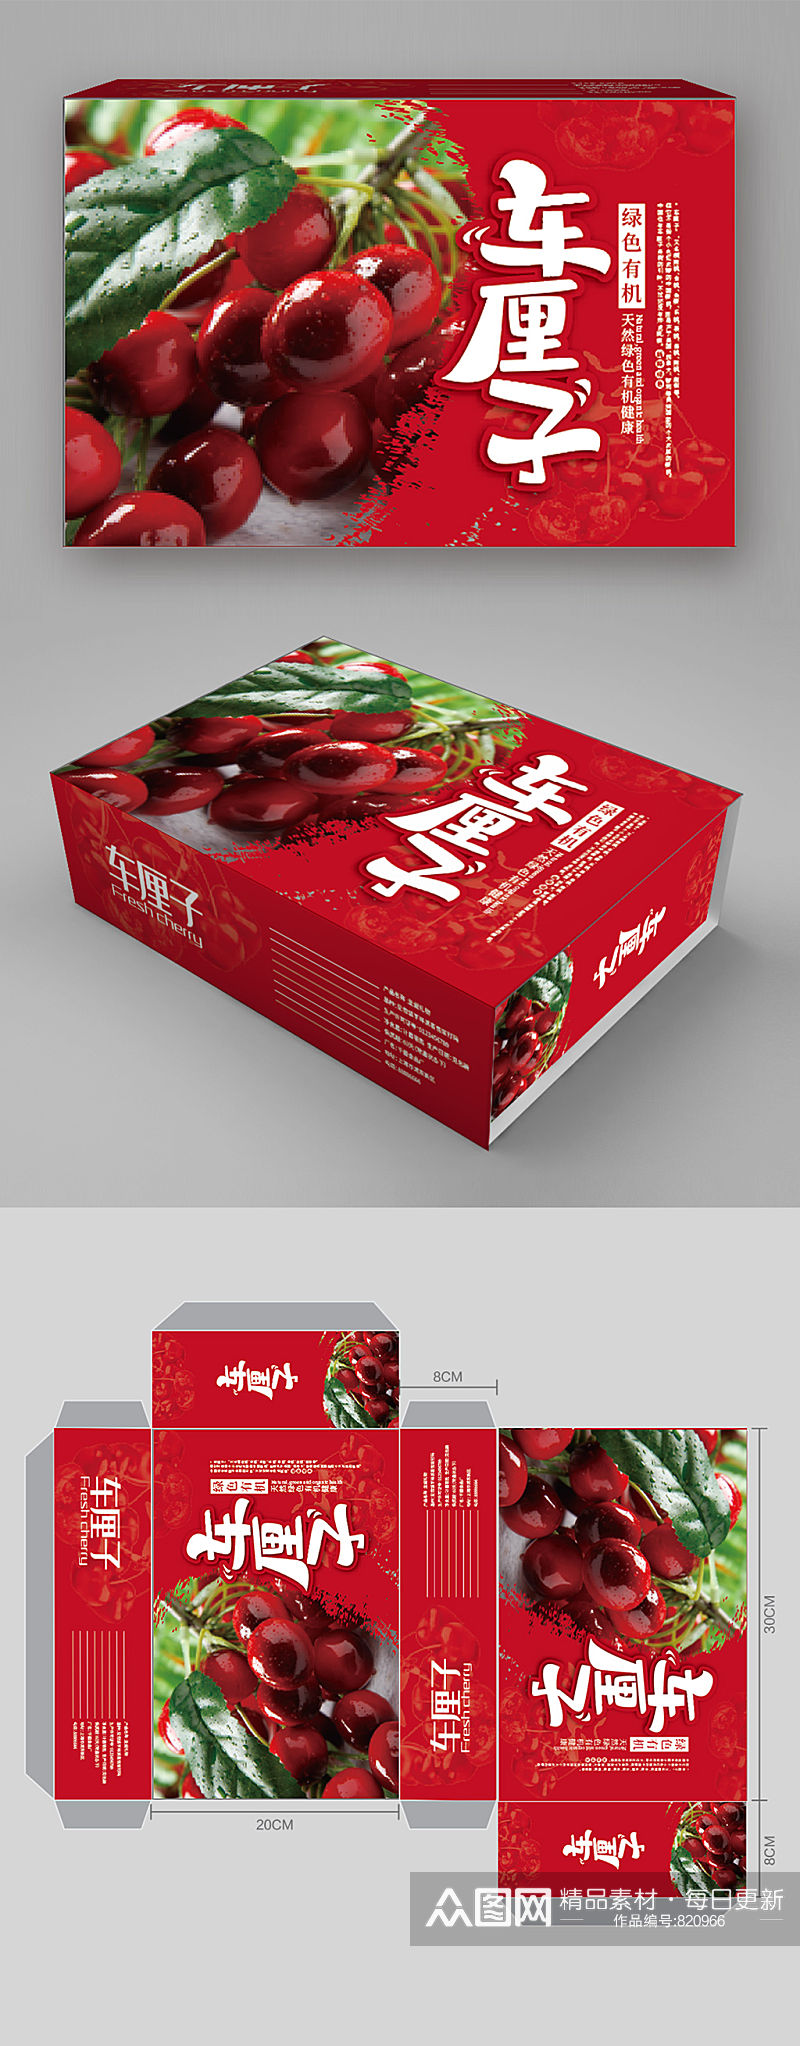 农产品车厘子水果包装礼盒包装设计素材